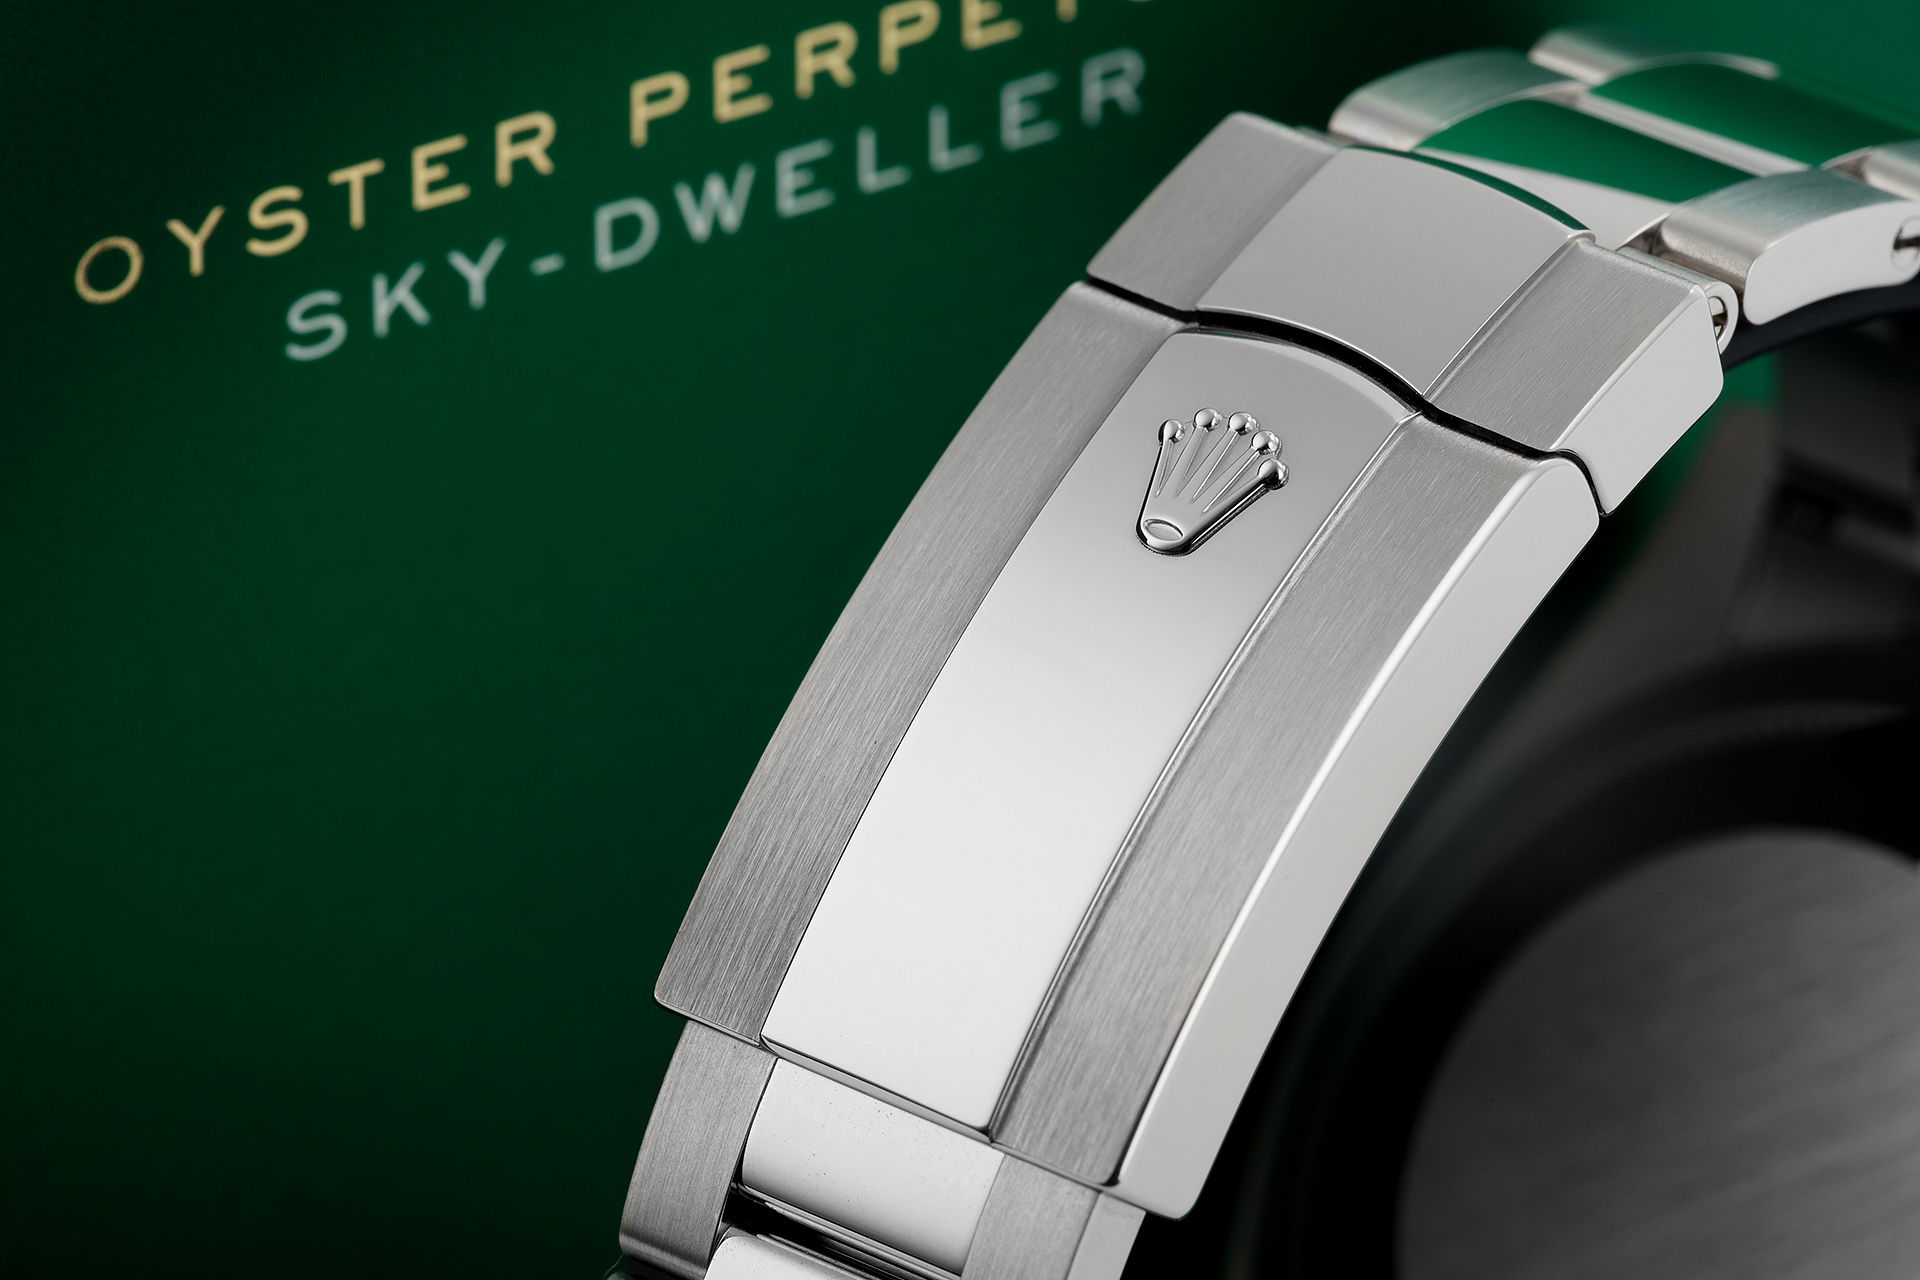 ref 326934 | New Steel Model '5 Year Warranty' | Rolex Sky Dweller